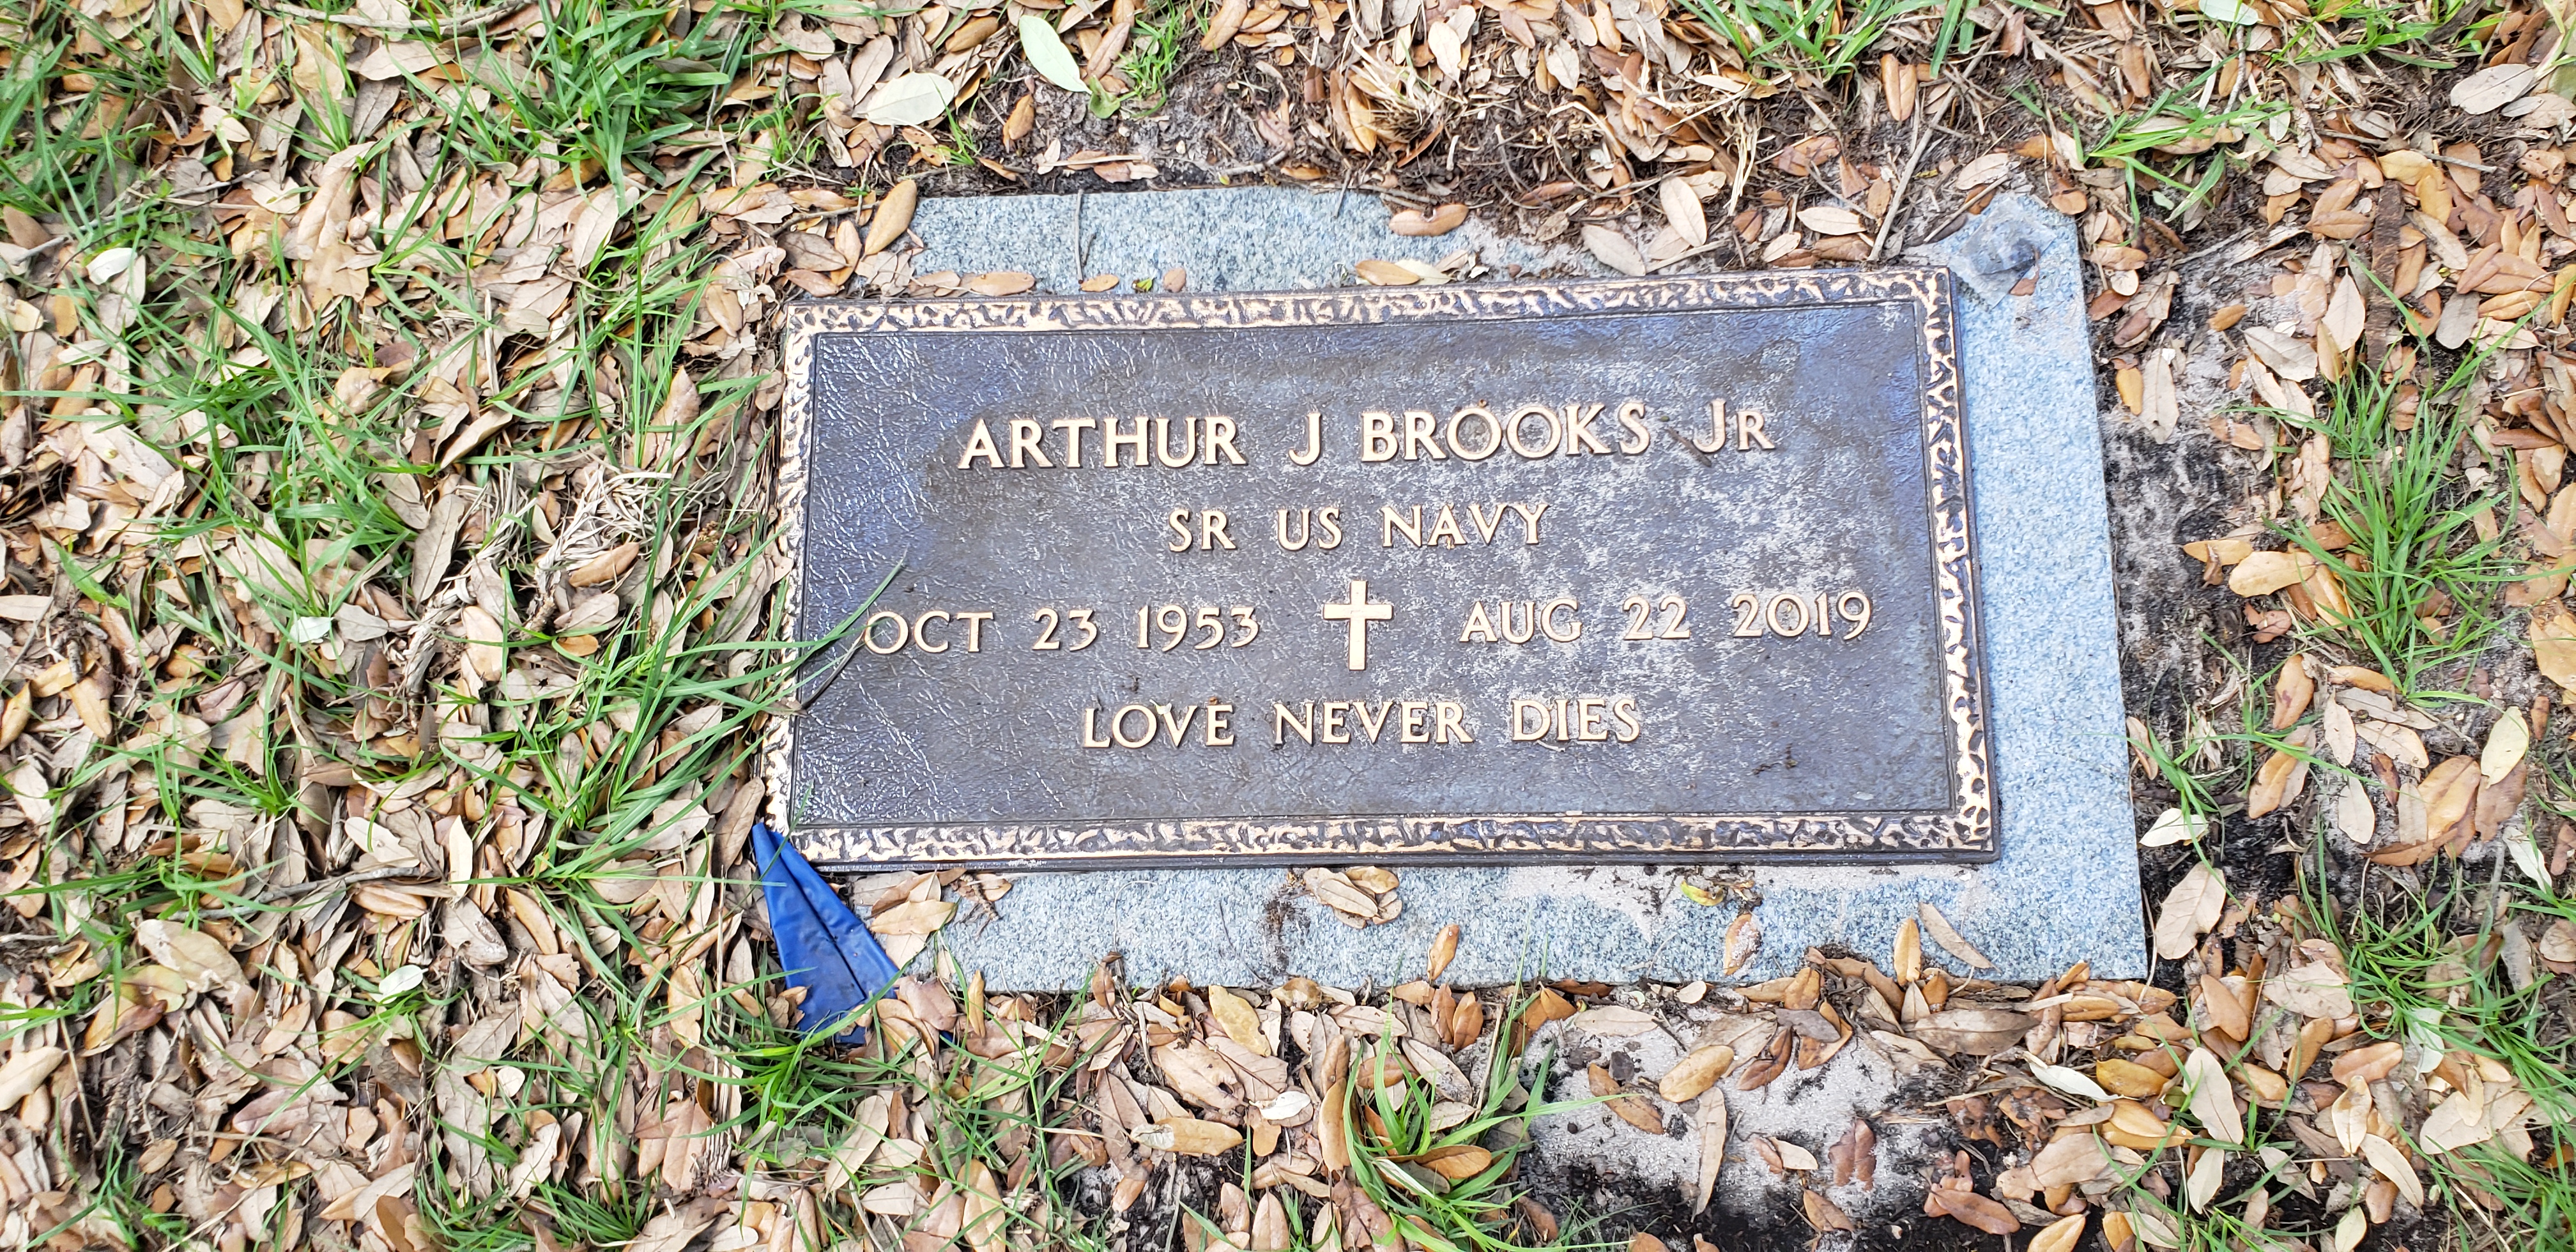 Arthur J Brooks, Jr